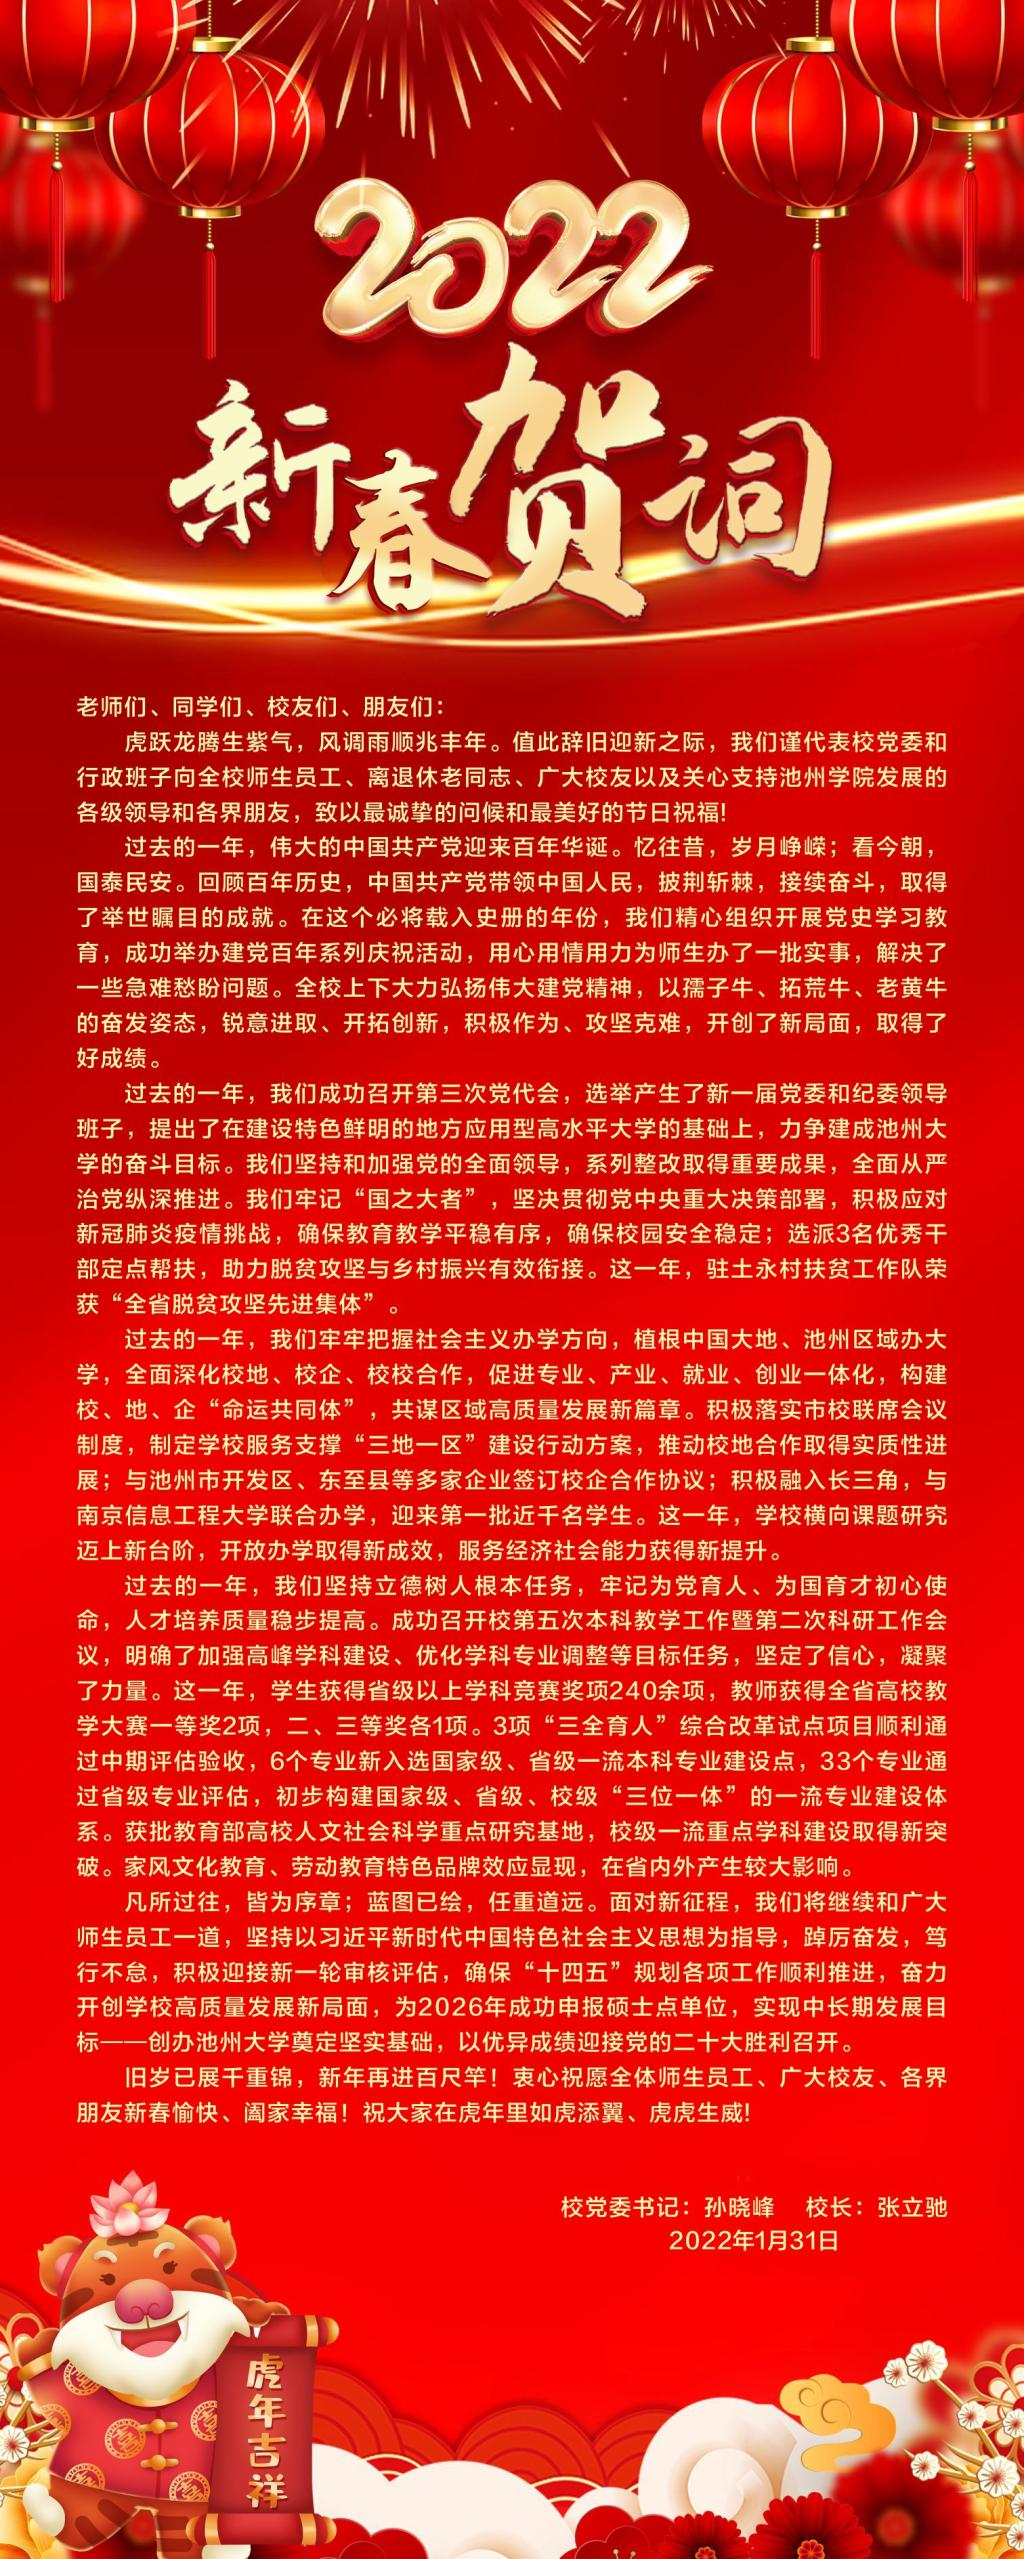 红色新年祝福语信纸模板-我拉网